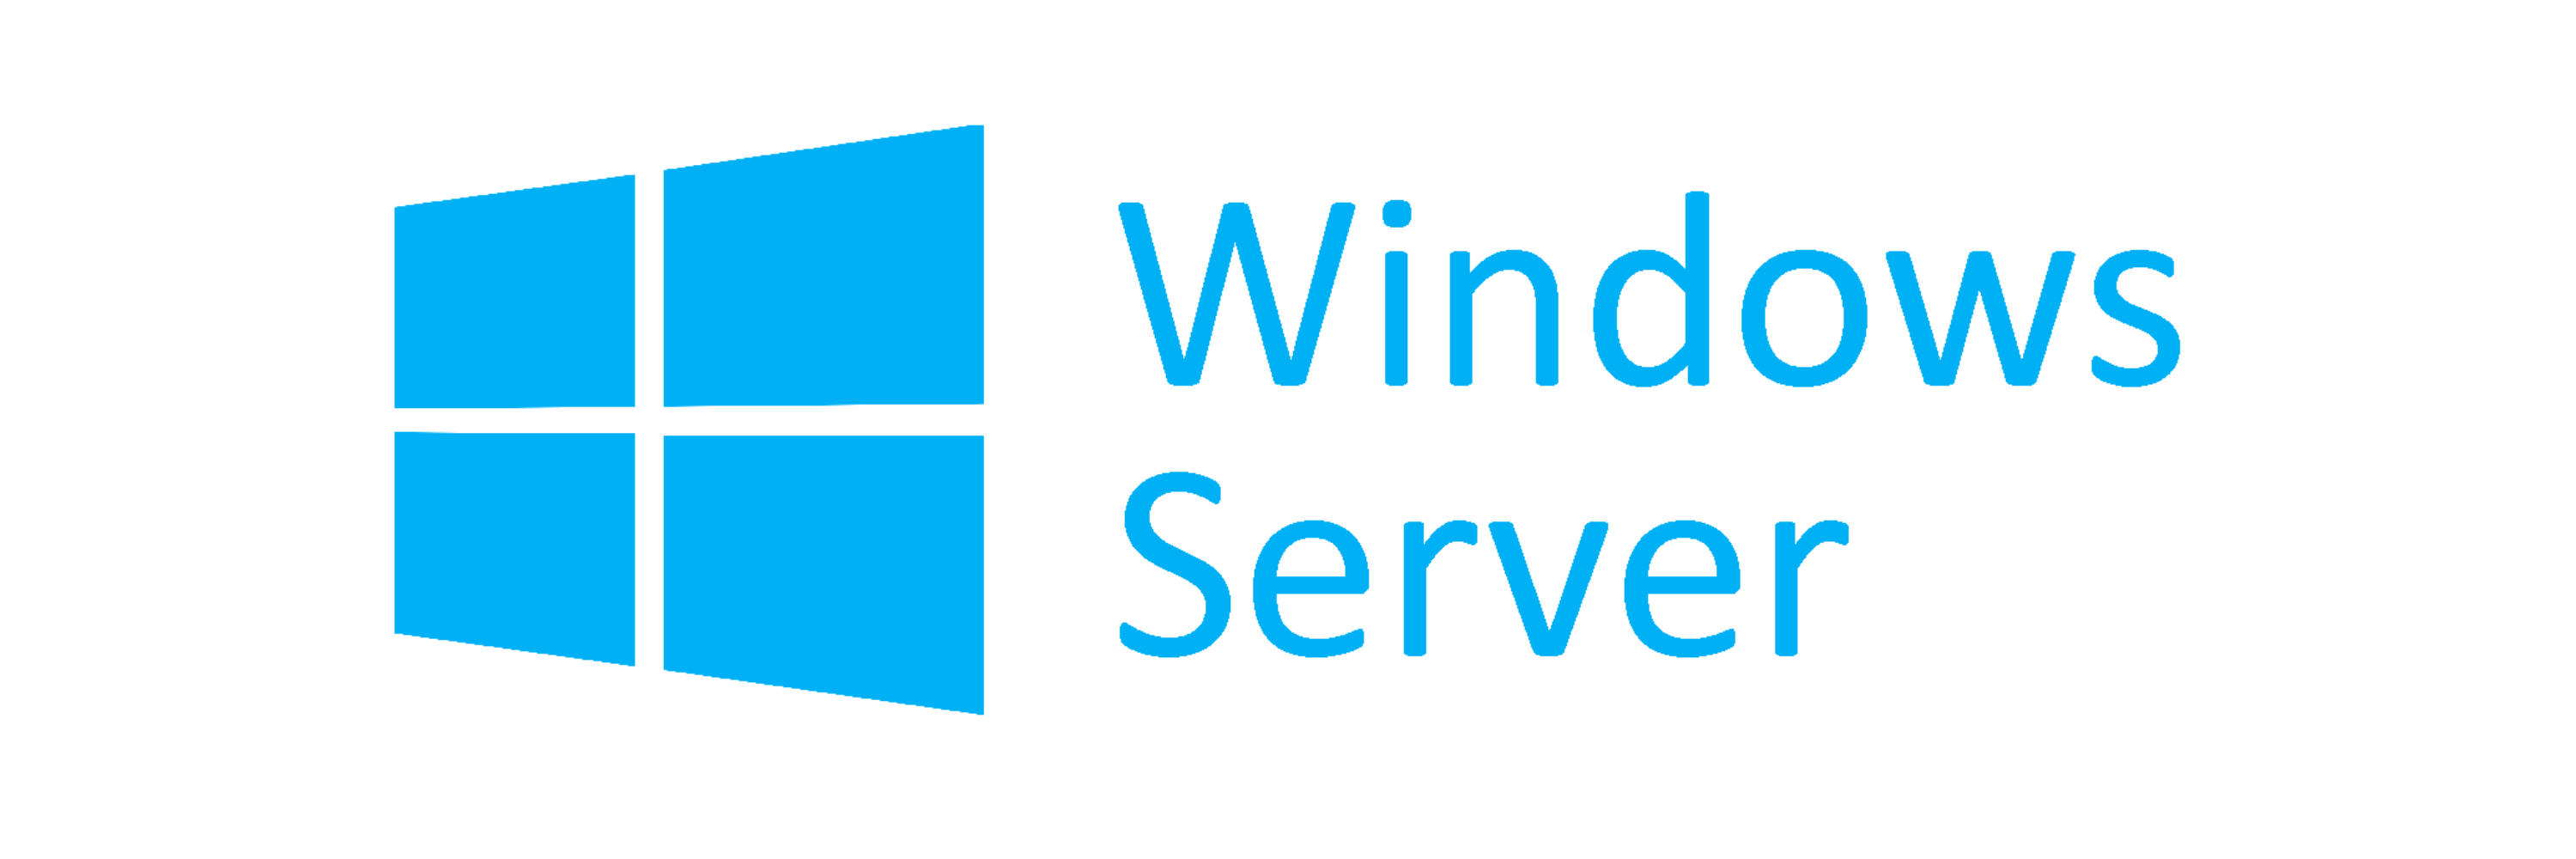 Windows server_Logo